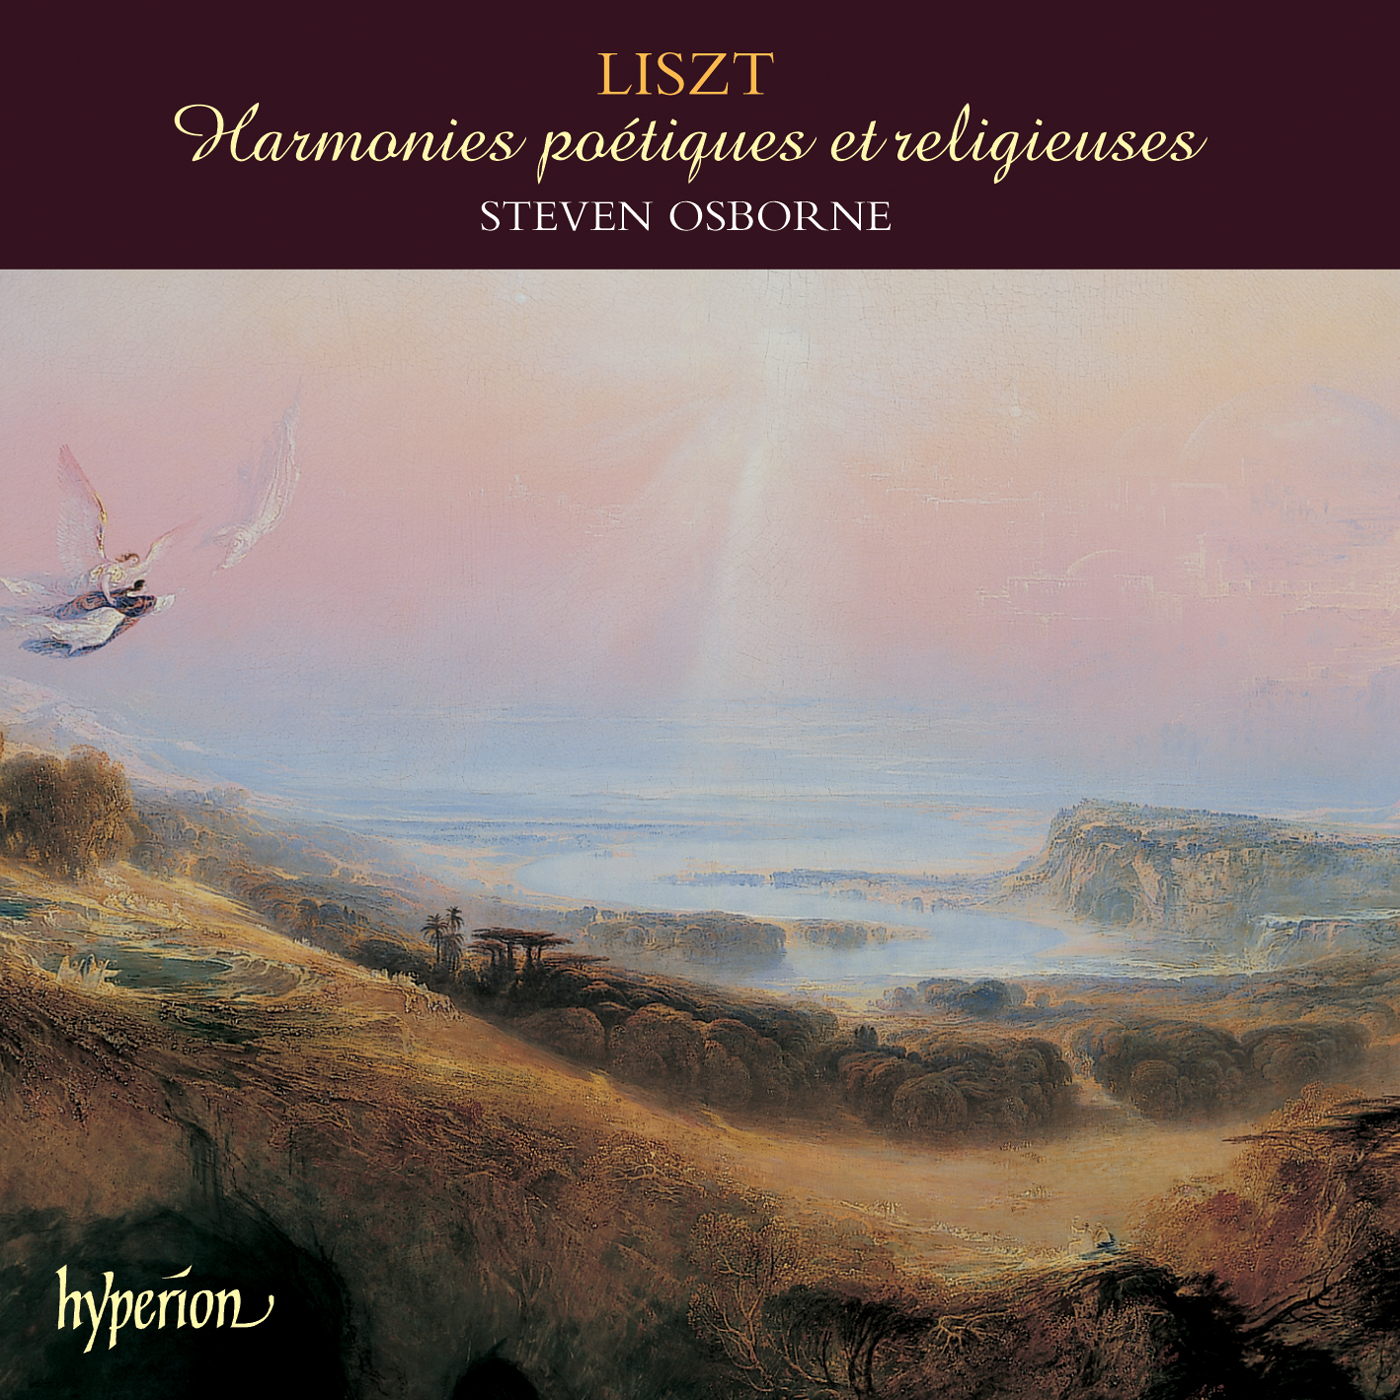 Liszt: Harmonies poétiques et religieuses